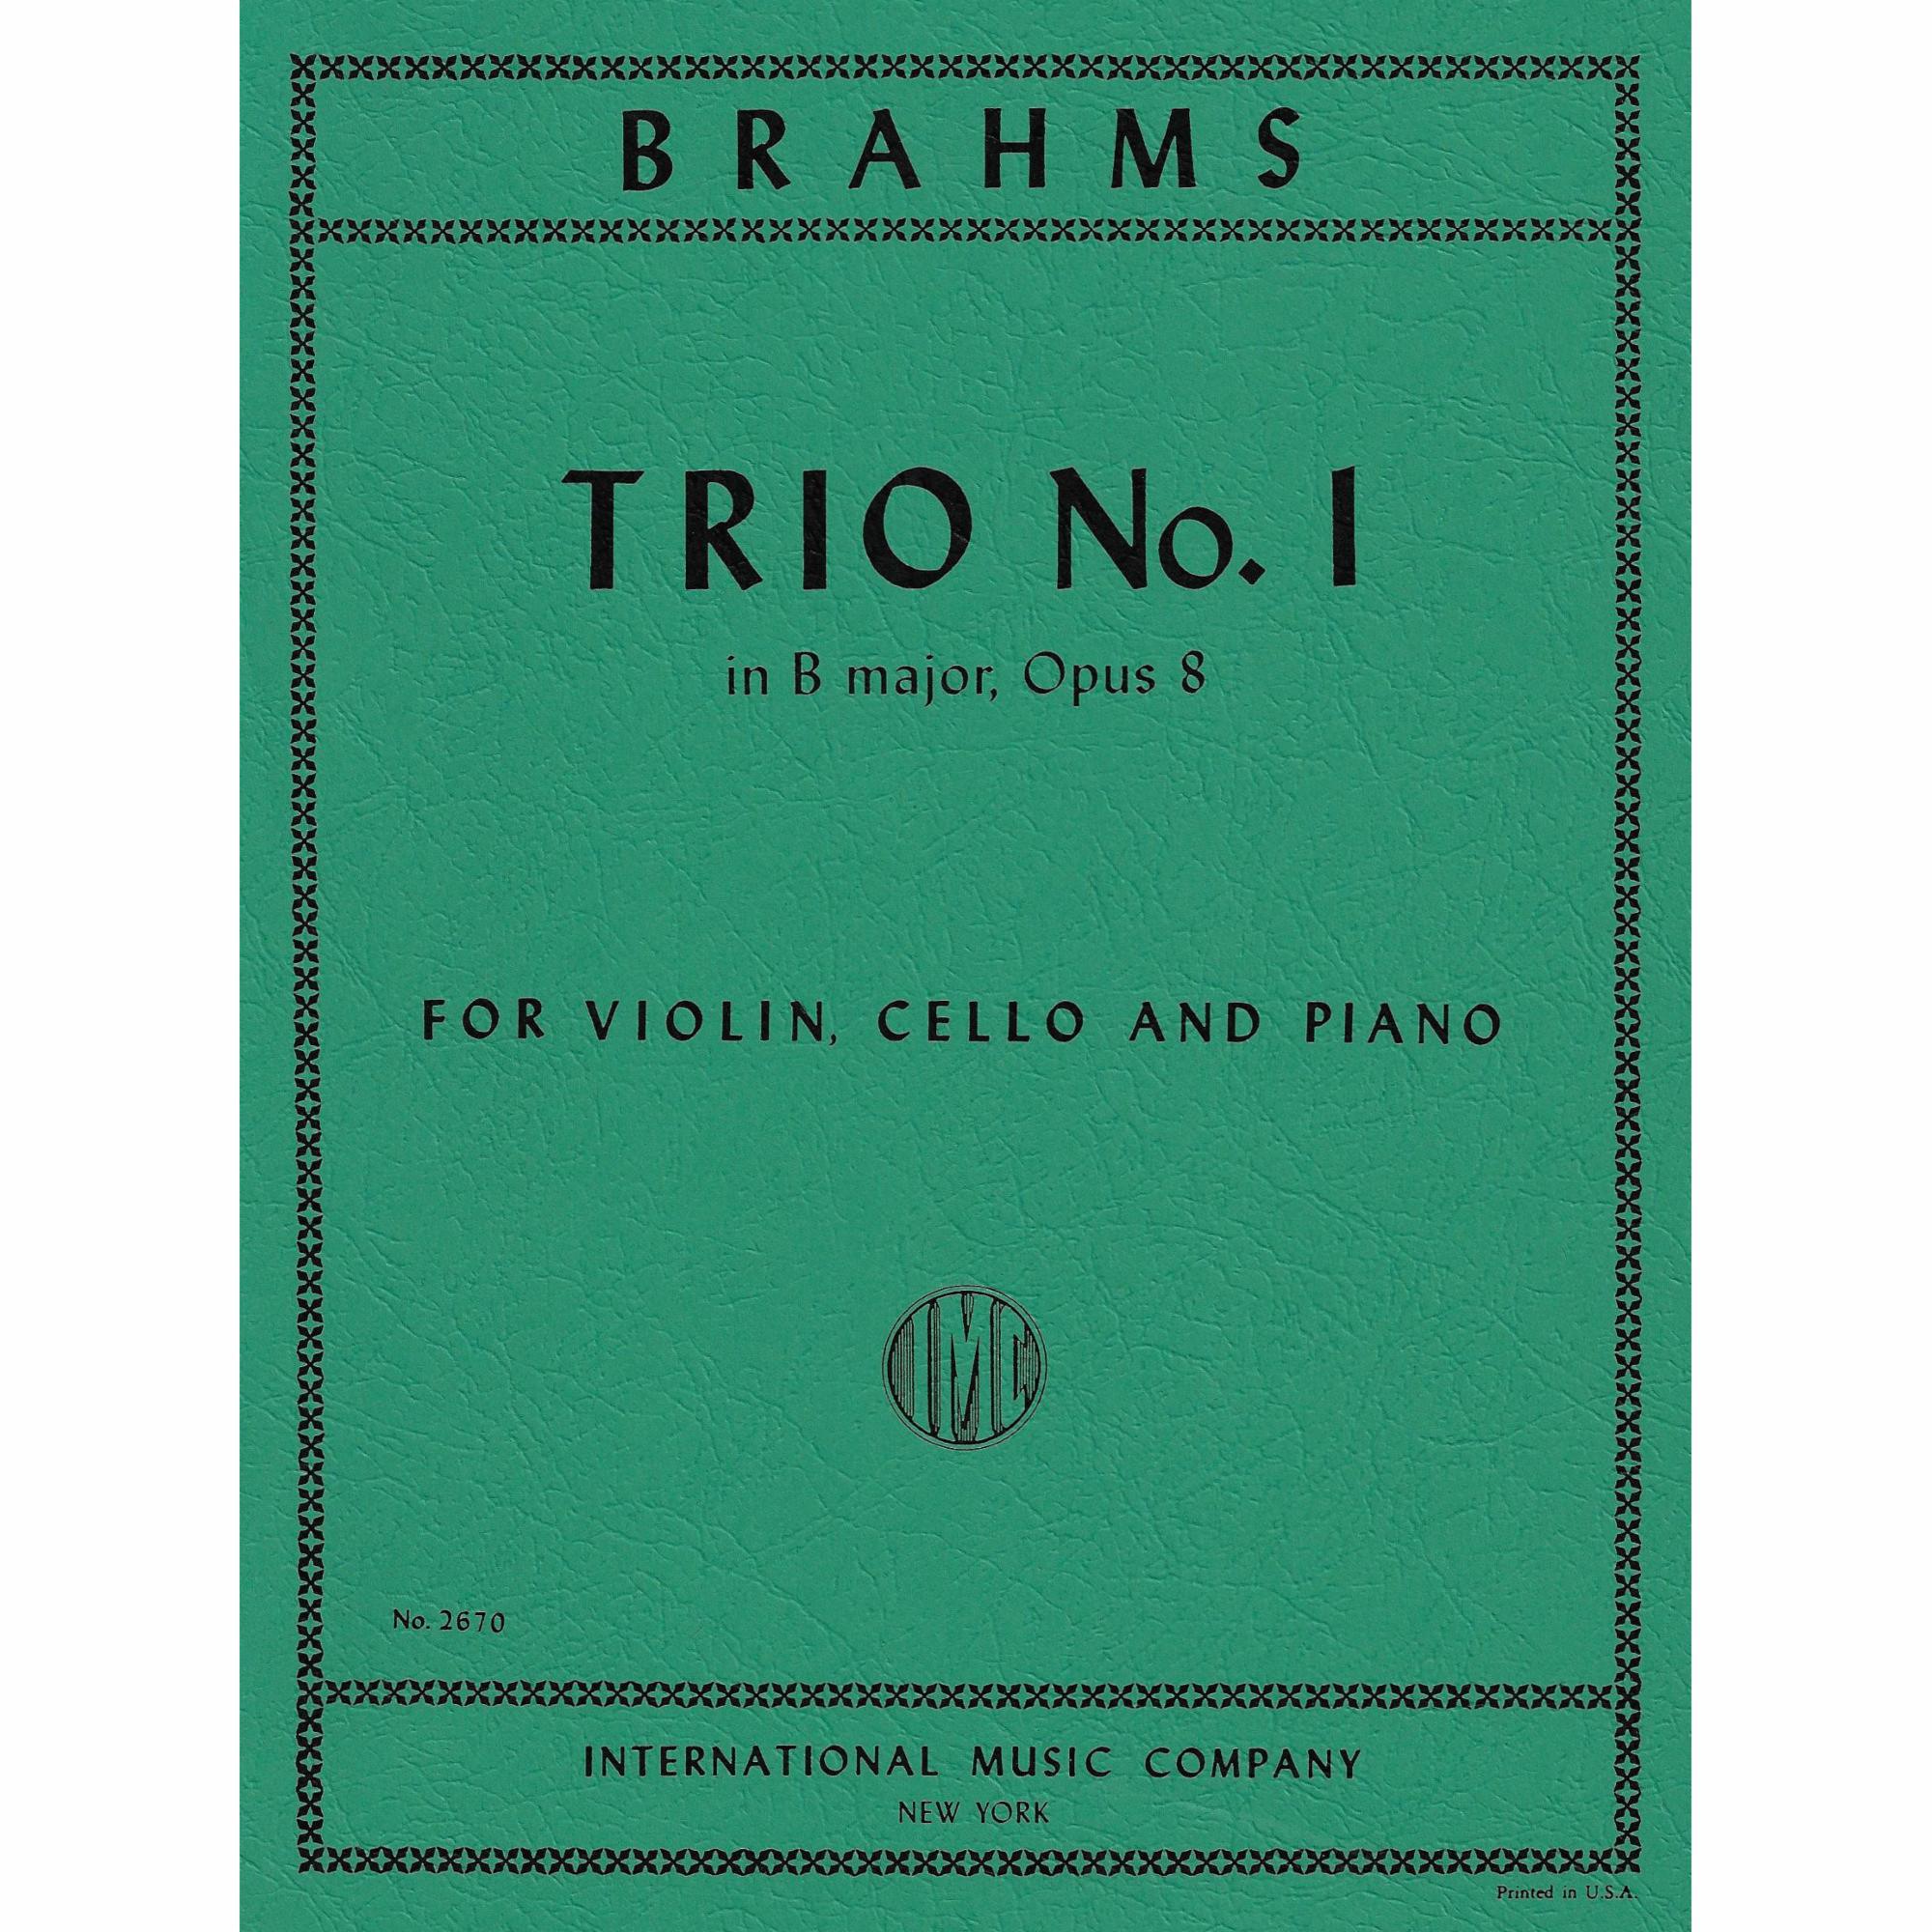 Brahms -- Piano Trio No. 1 in B Major, Op. 8